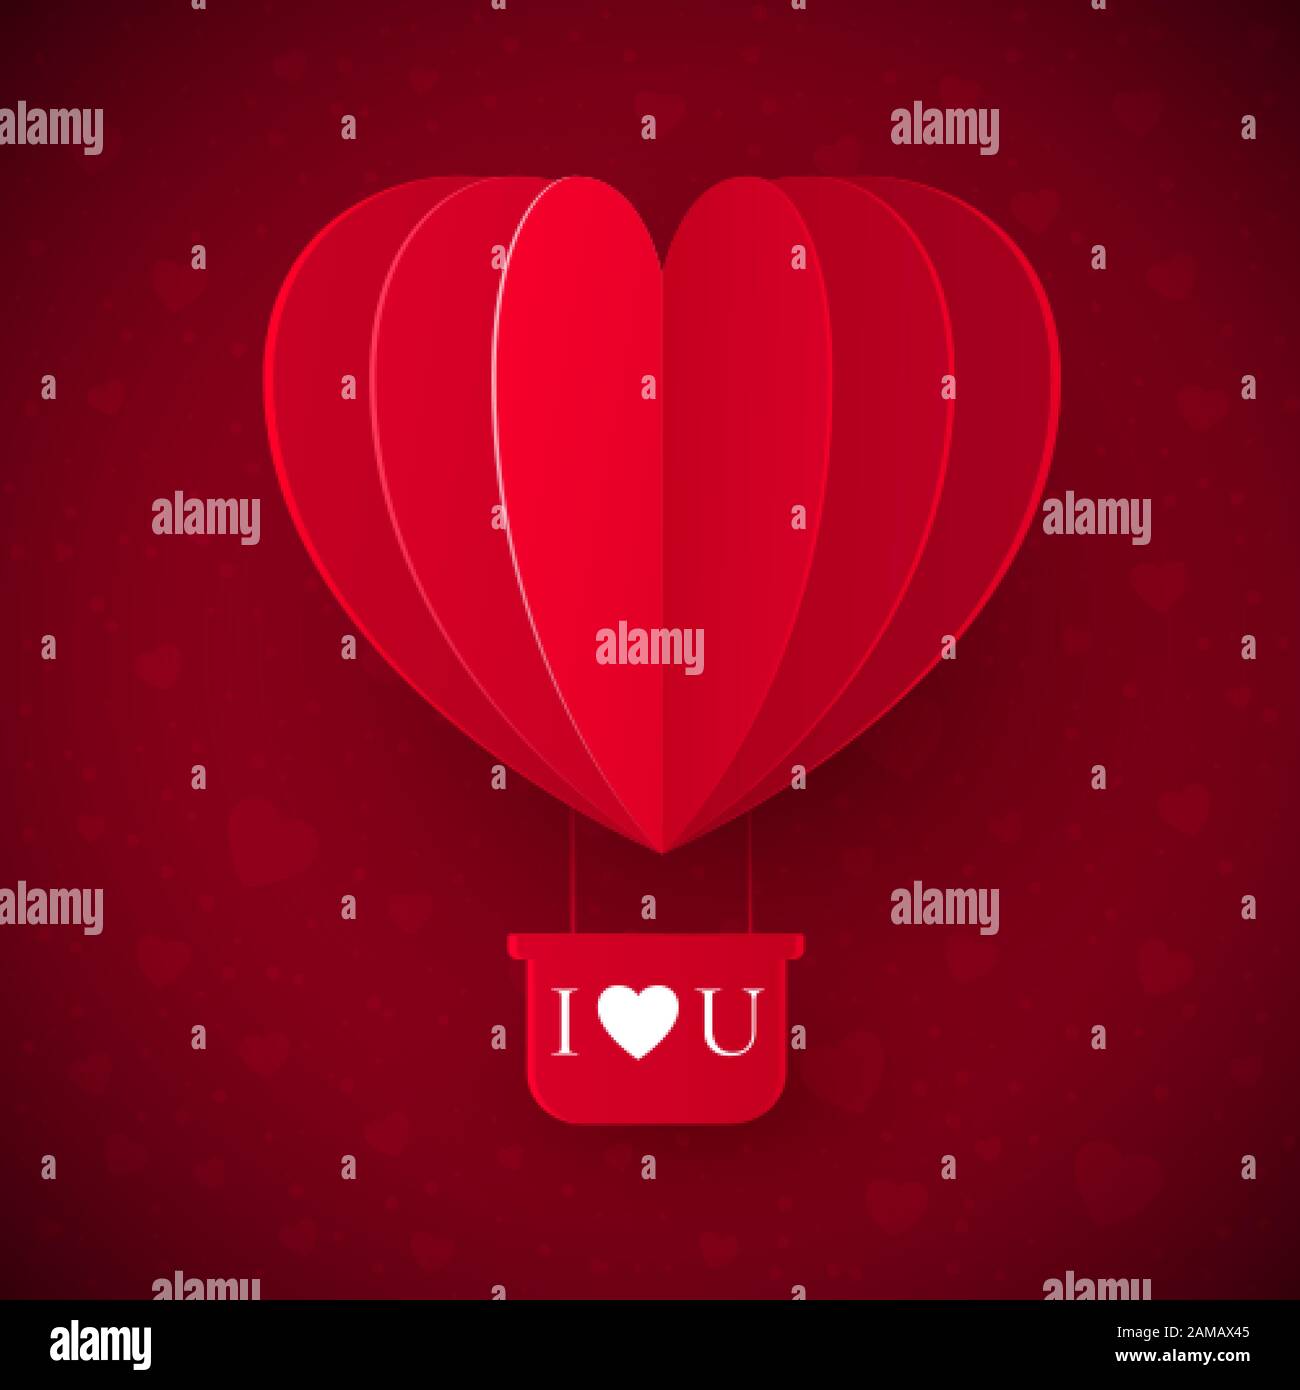 Saint Valentin avec papier coupé coeur rouge ballon volant. Message D'Amour Pour La Saint-Valentin - Je T'Aime. Illustration vectorielle Illustration de Vecteur